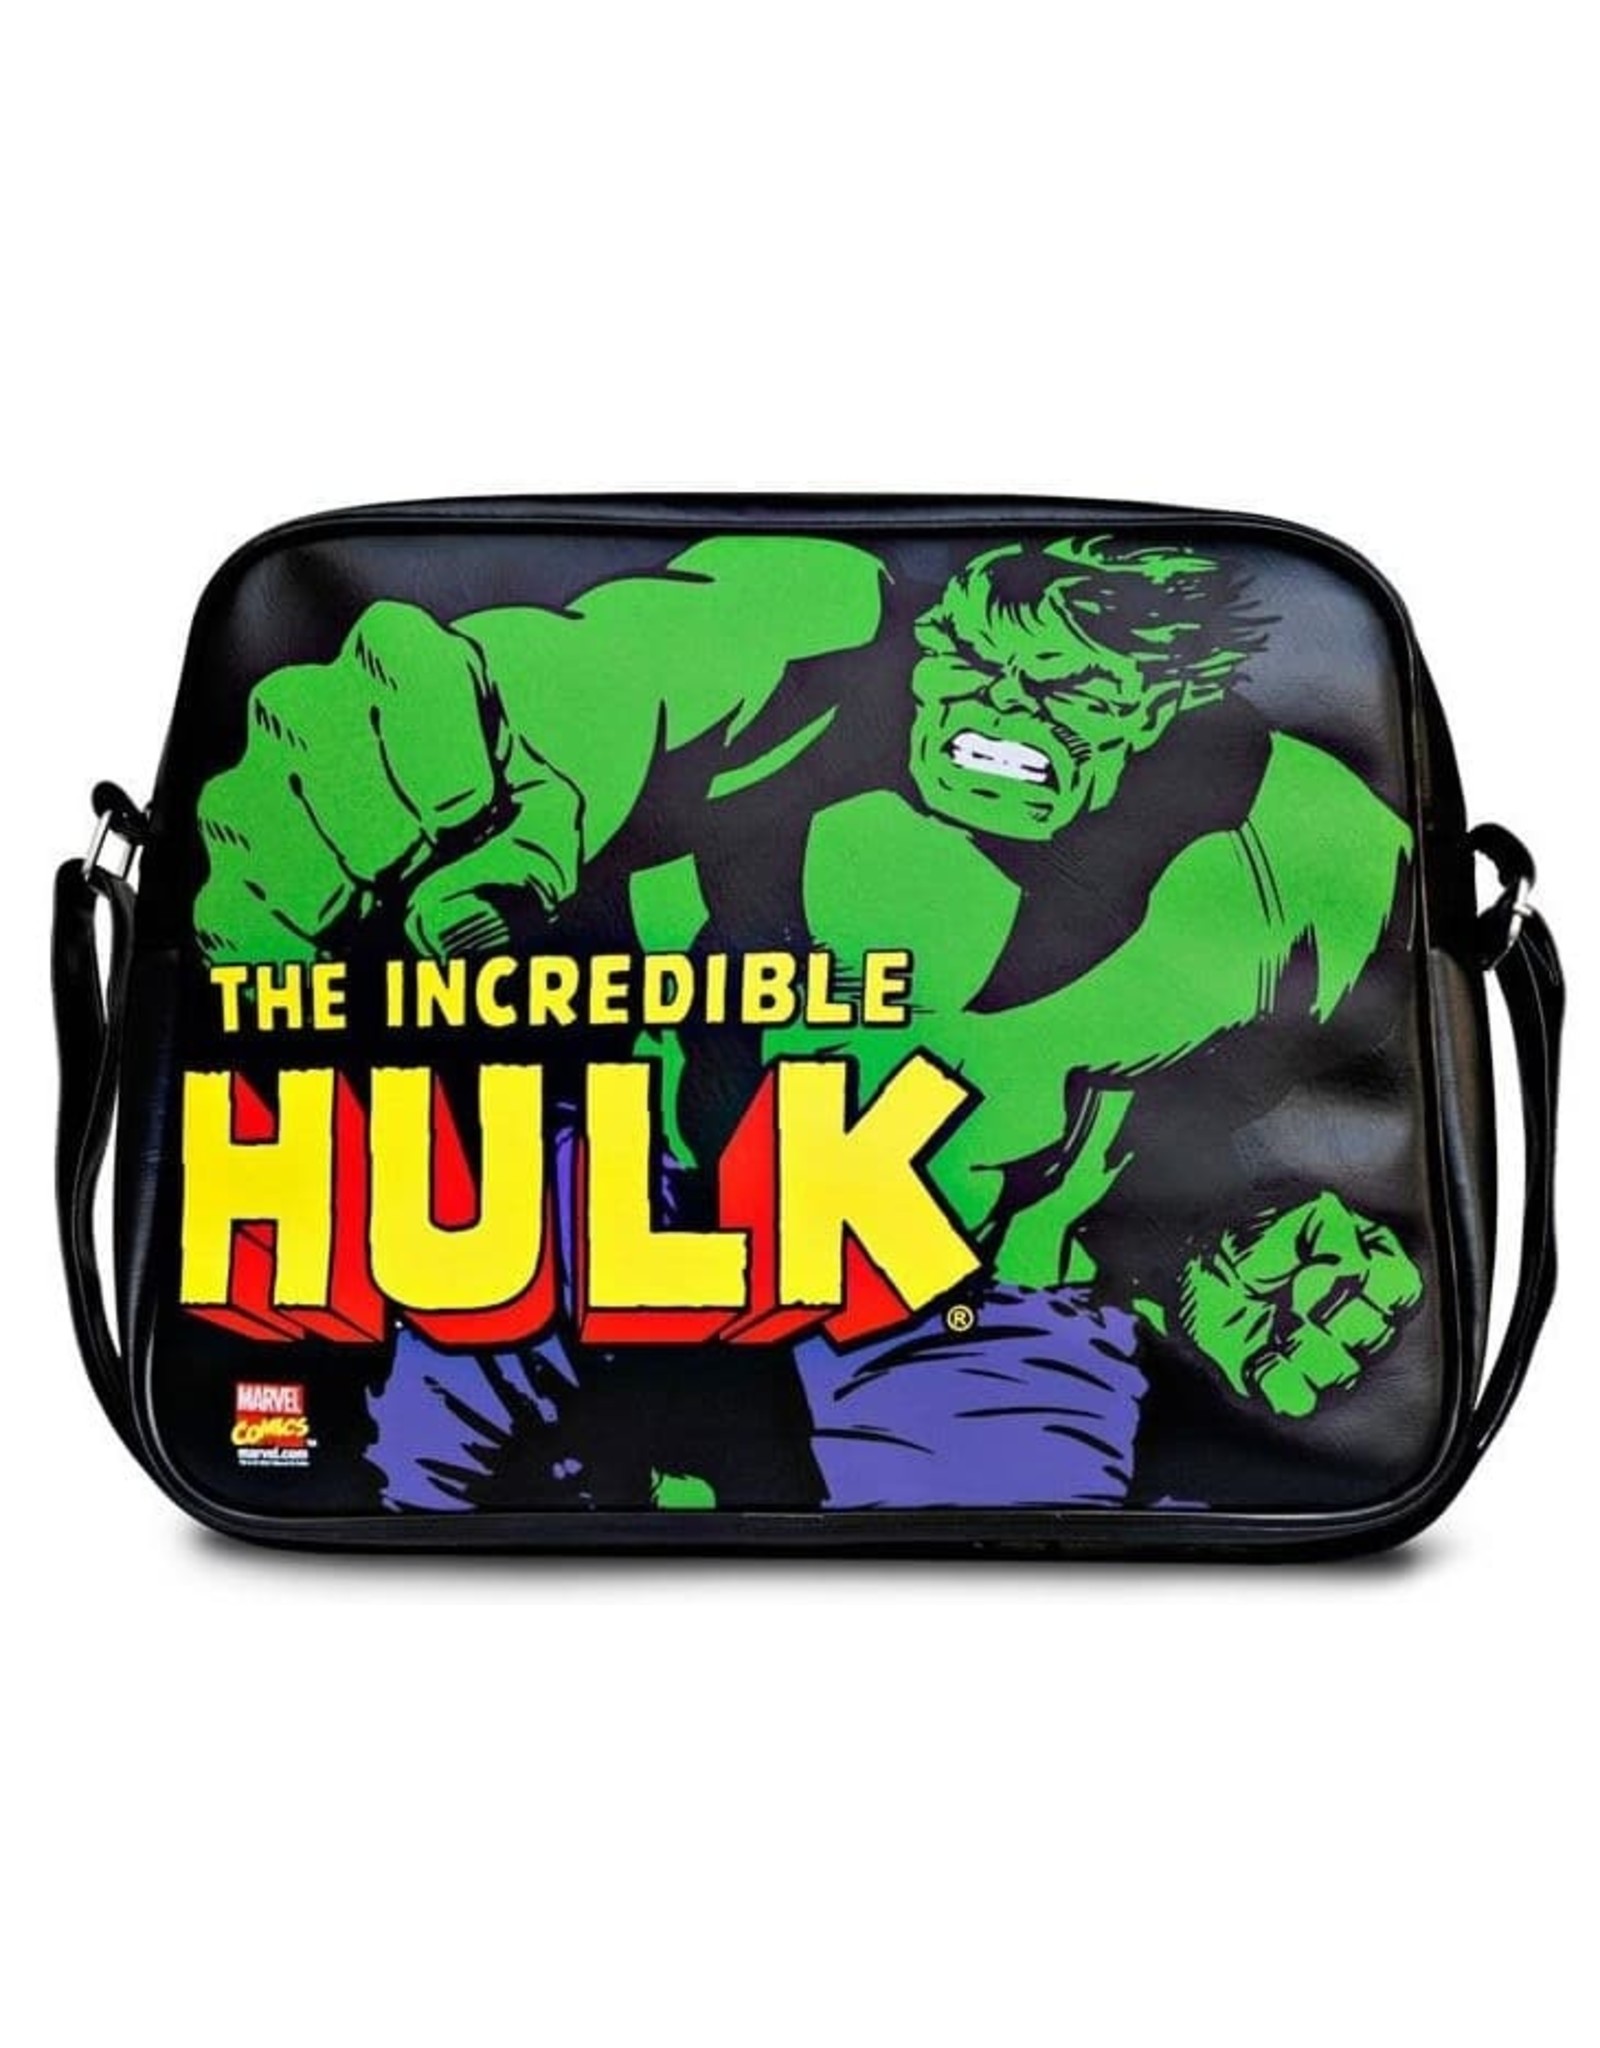 Marvel Marvel bags - Marvel messenger bag Hulk retro